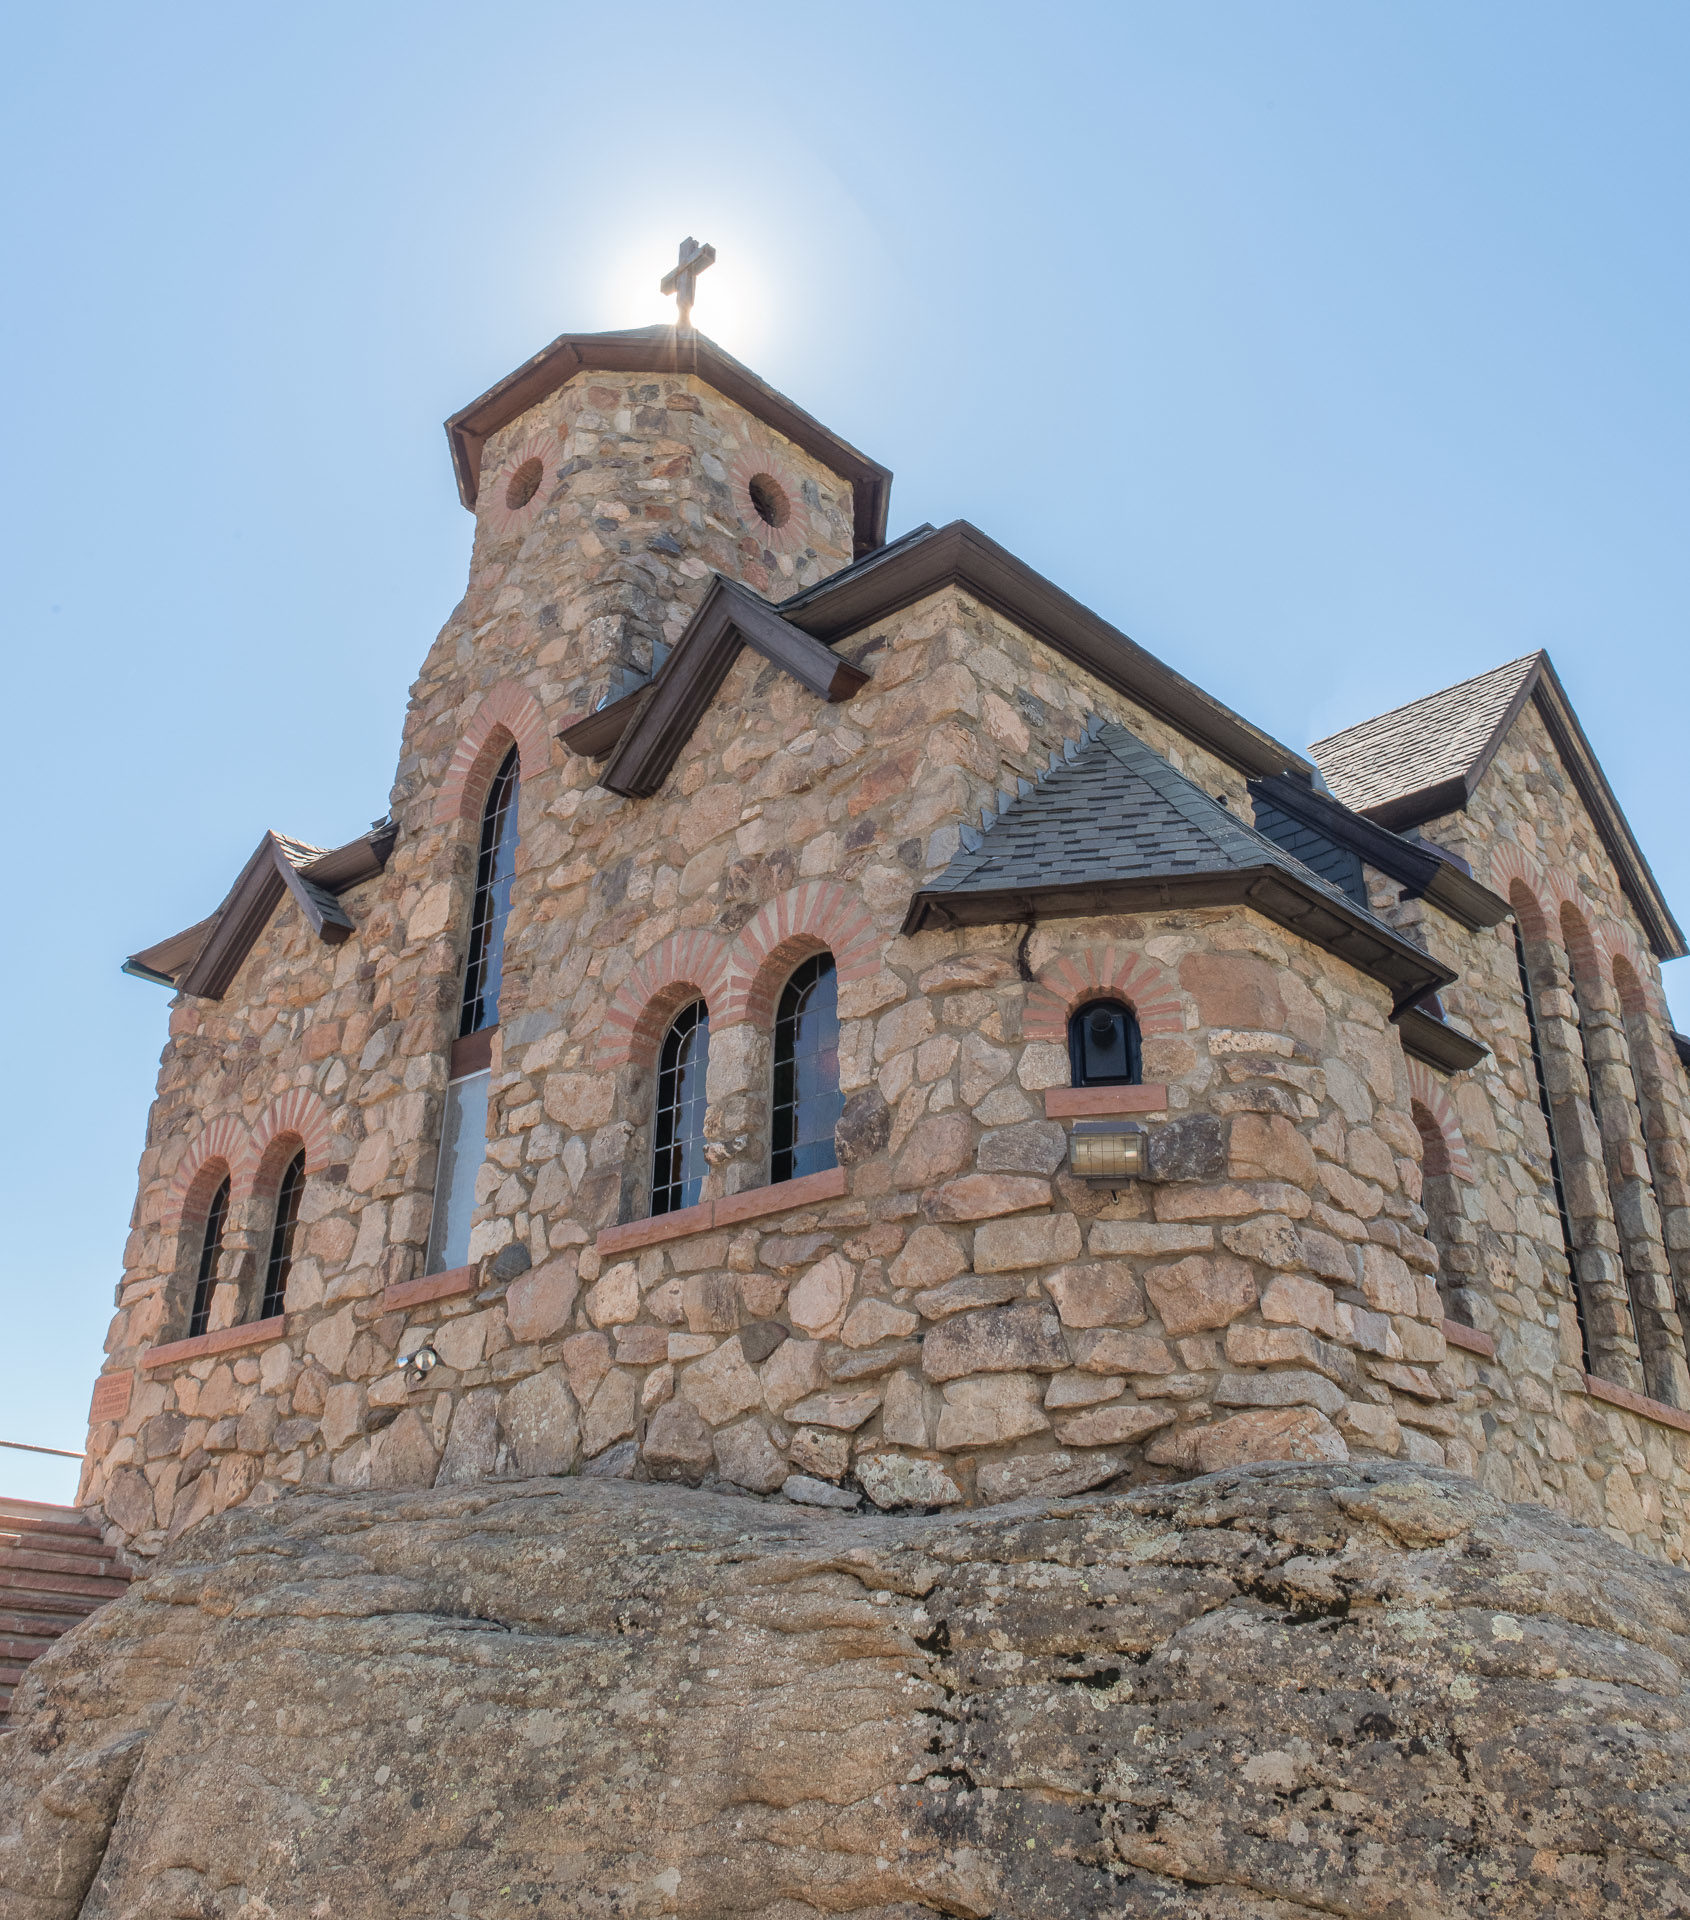 The Rock Church of Inman